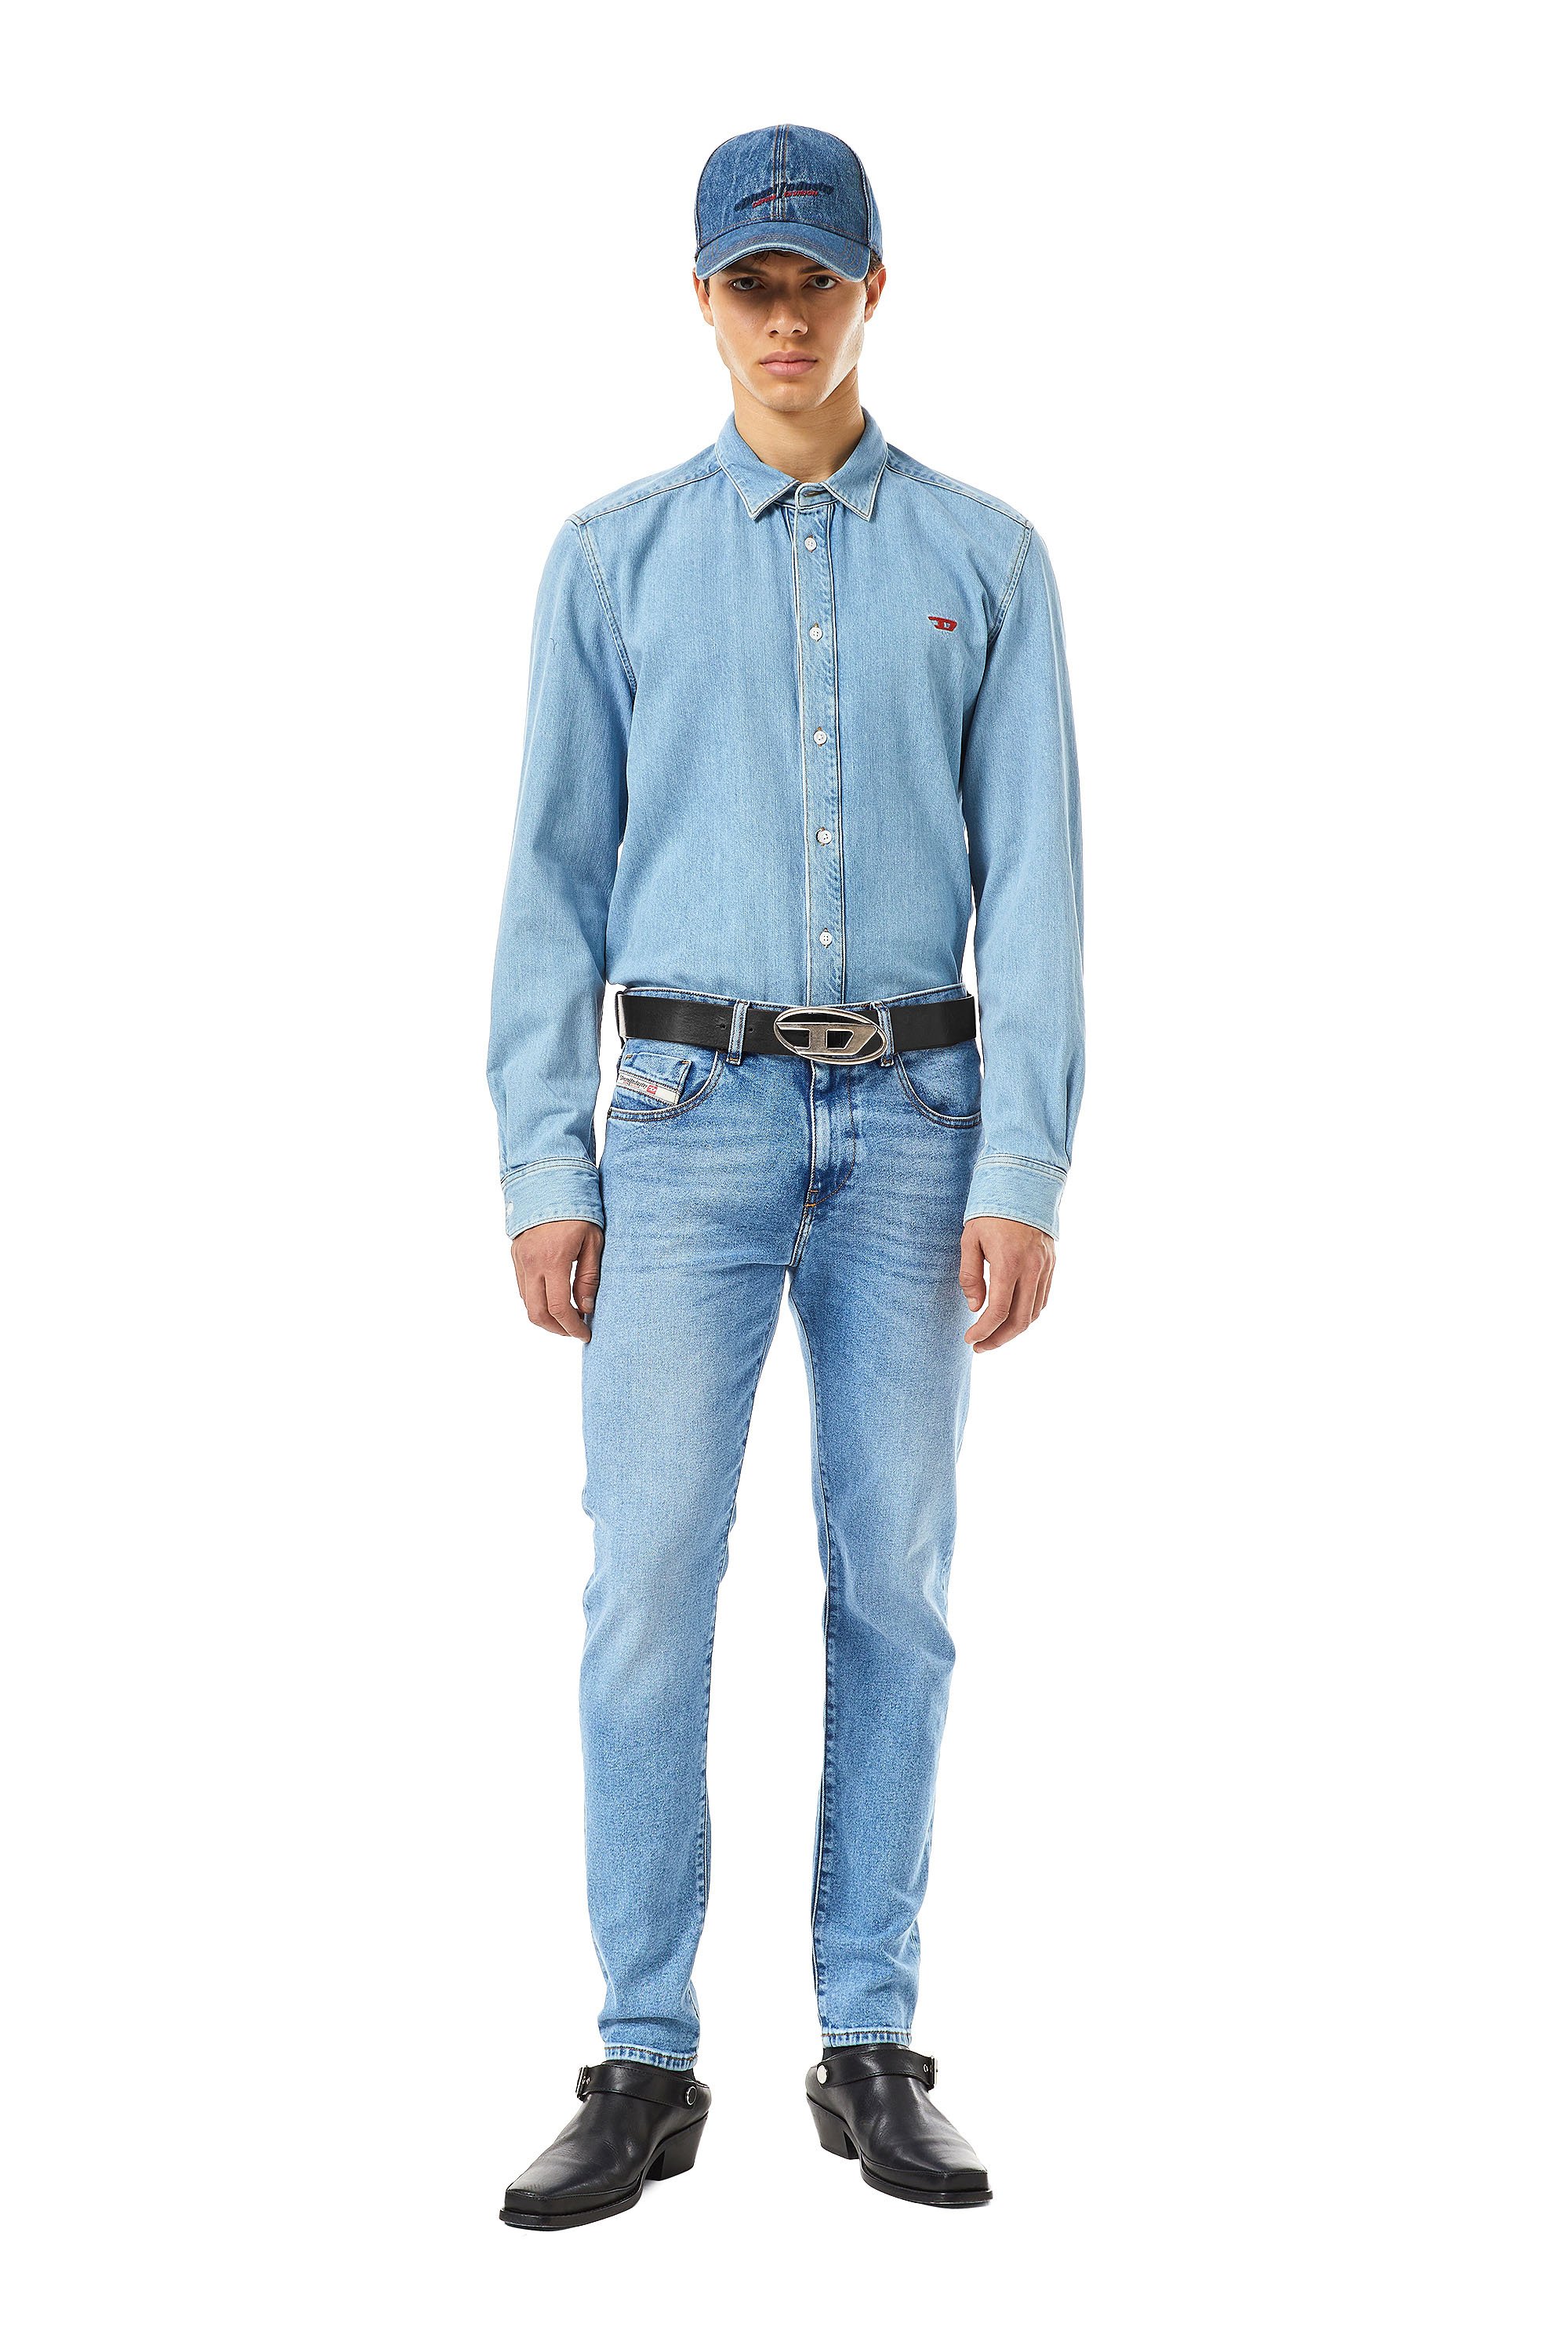 Diesel - Slim Jeans 2019 D-Strukt 09B92, Light Blue - Image 5